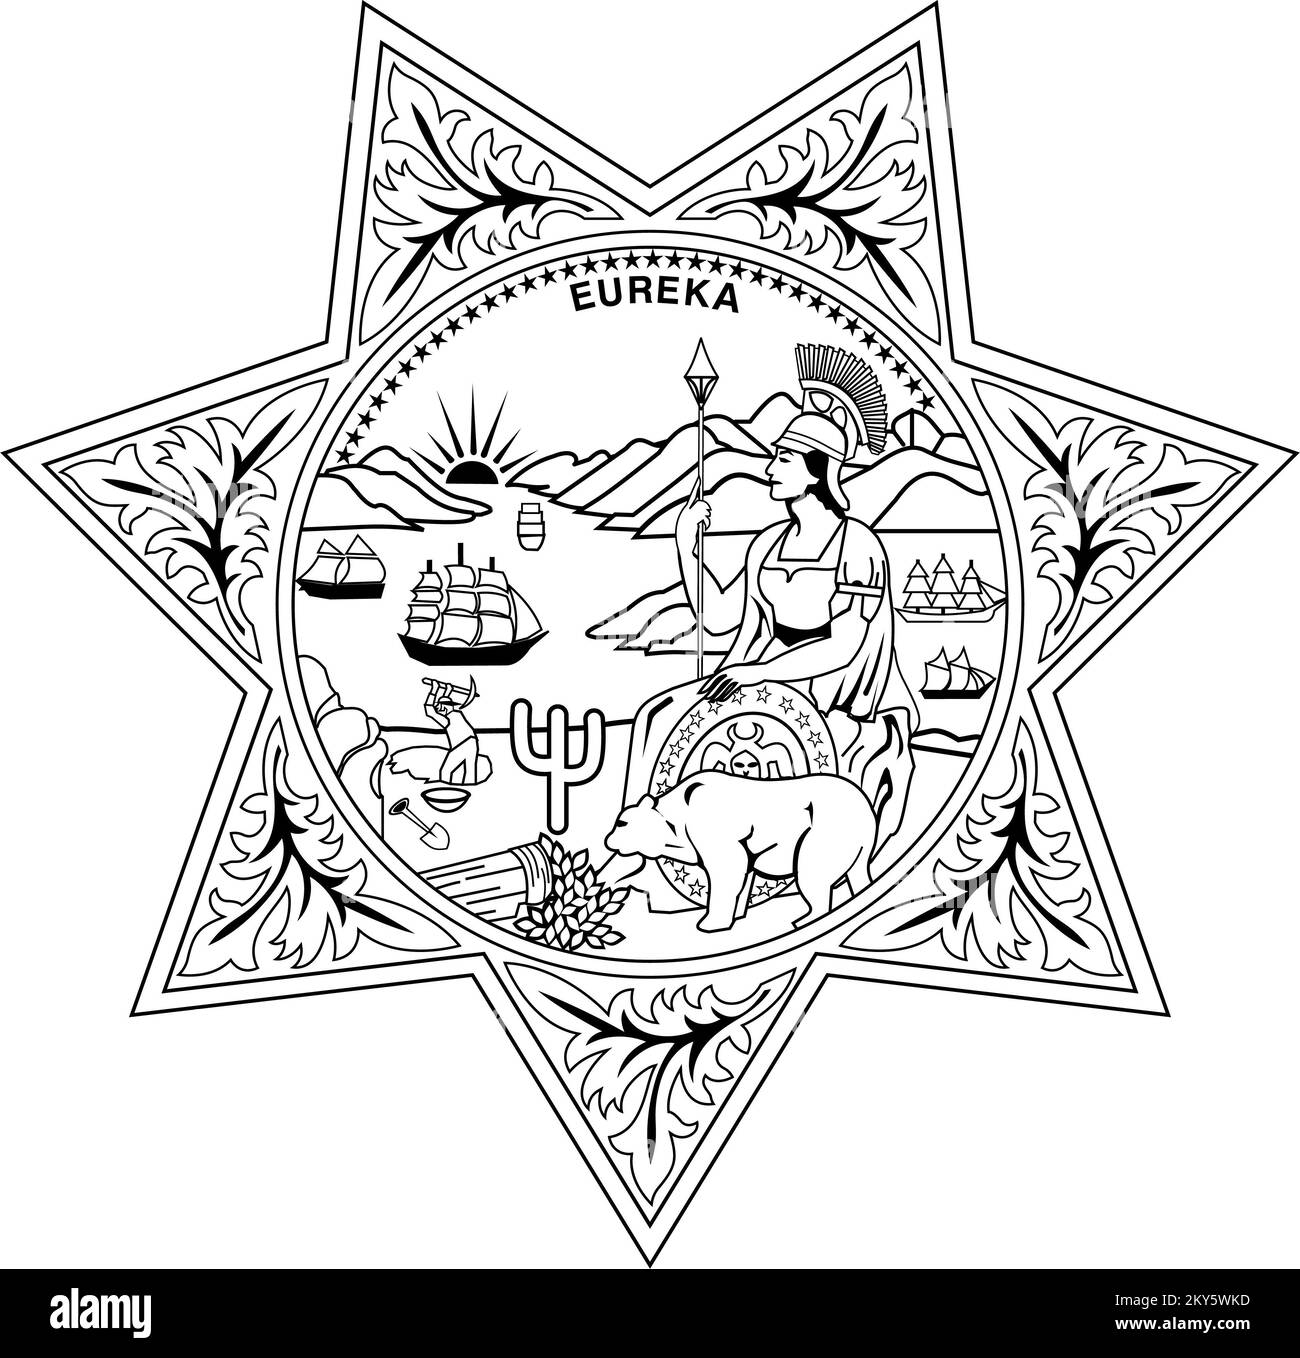 California State Seal mit 7-poligem Sheriff Star Black Line Art scharfes, sauberes und gestochen scharfes Bild Stockfoto